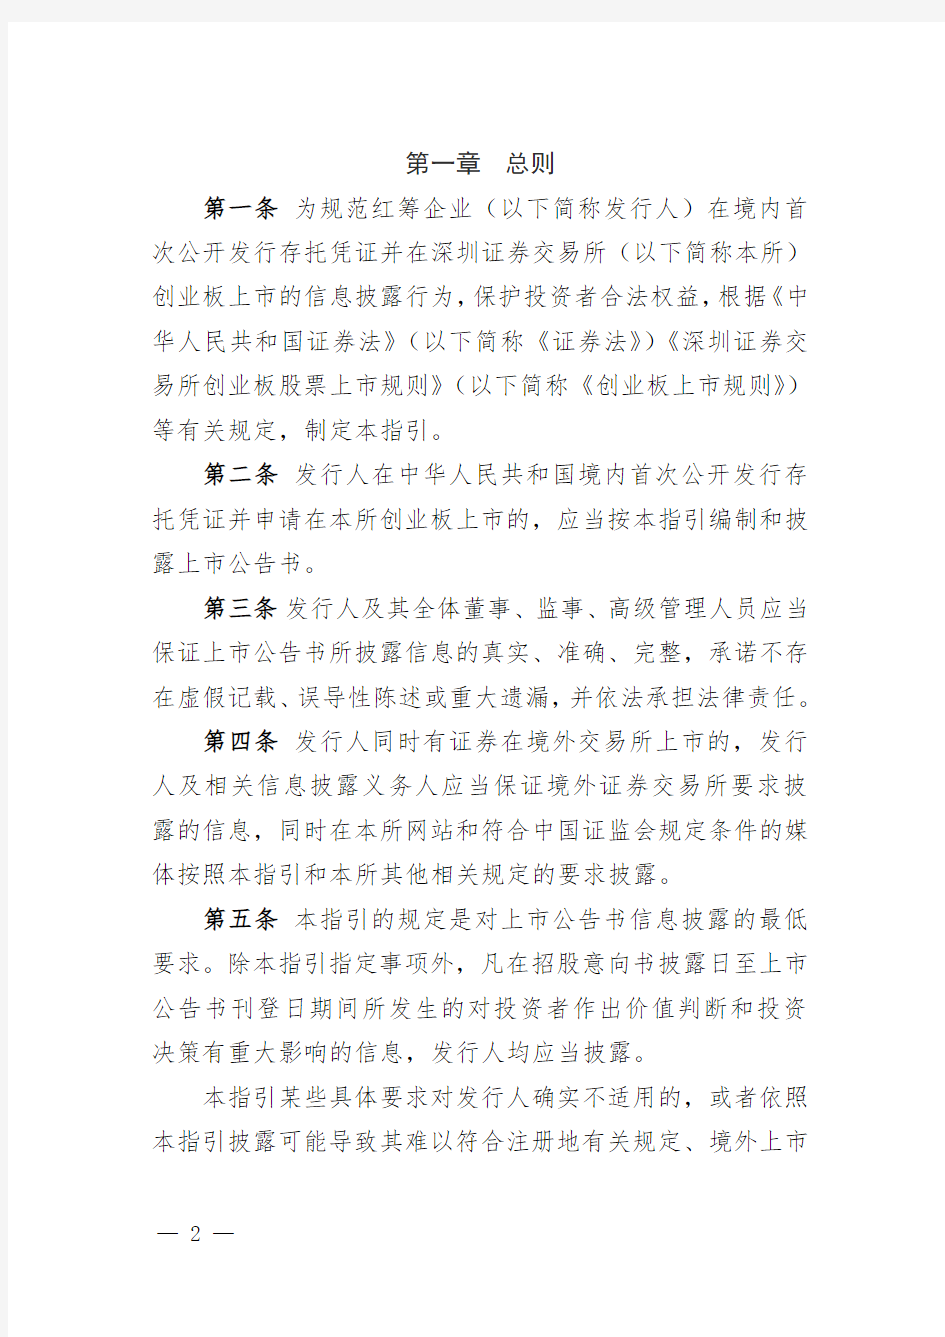 深圳证券交易所创业板存托凭证上市公告书内容与格式指引